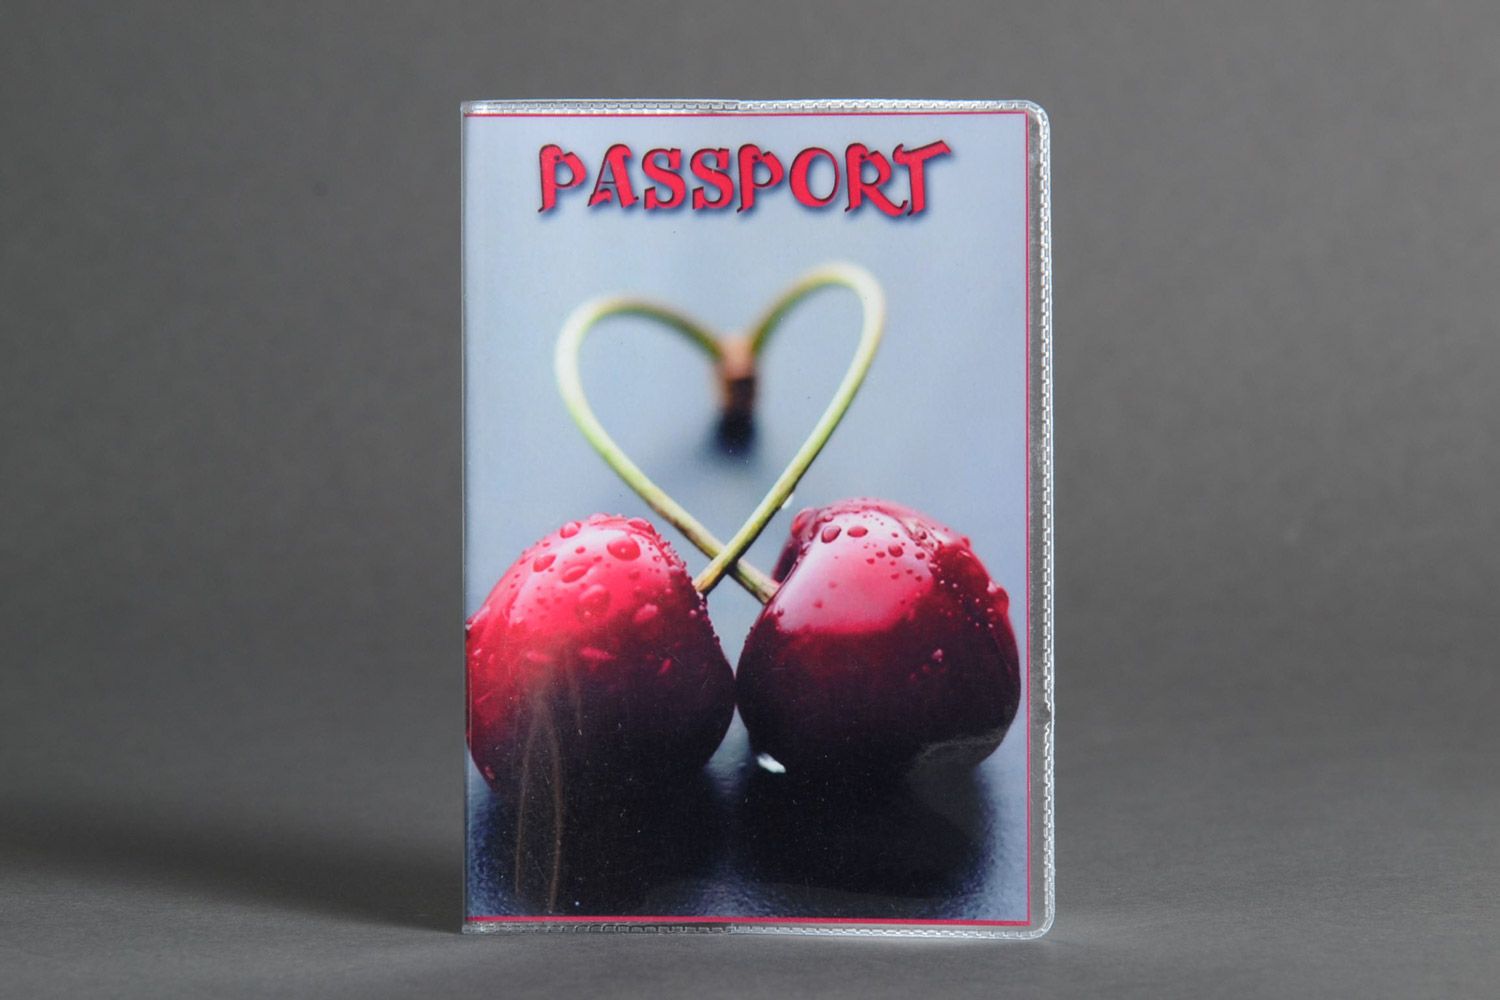 Обложка на паспорт с вишнями серая в технике печати ручная работа пластиковая фото 1